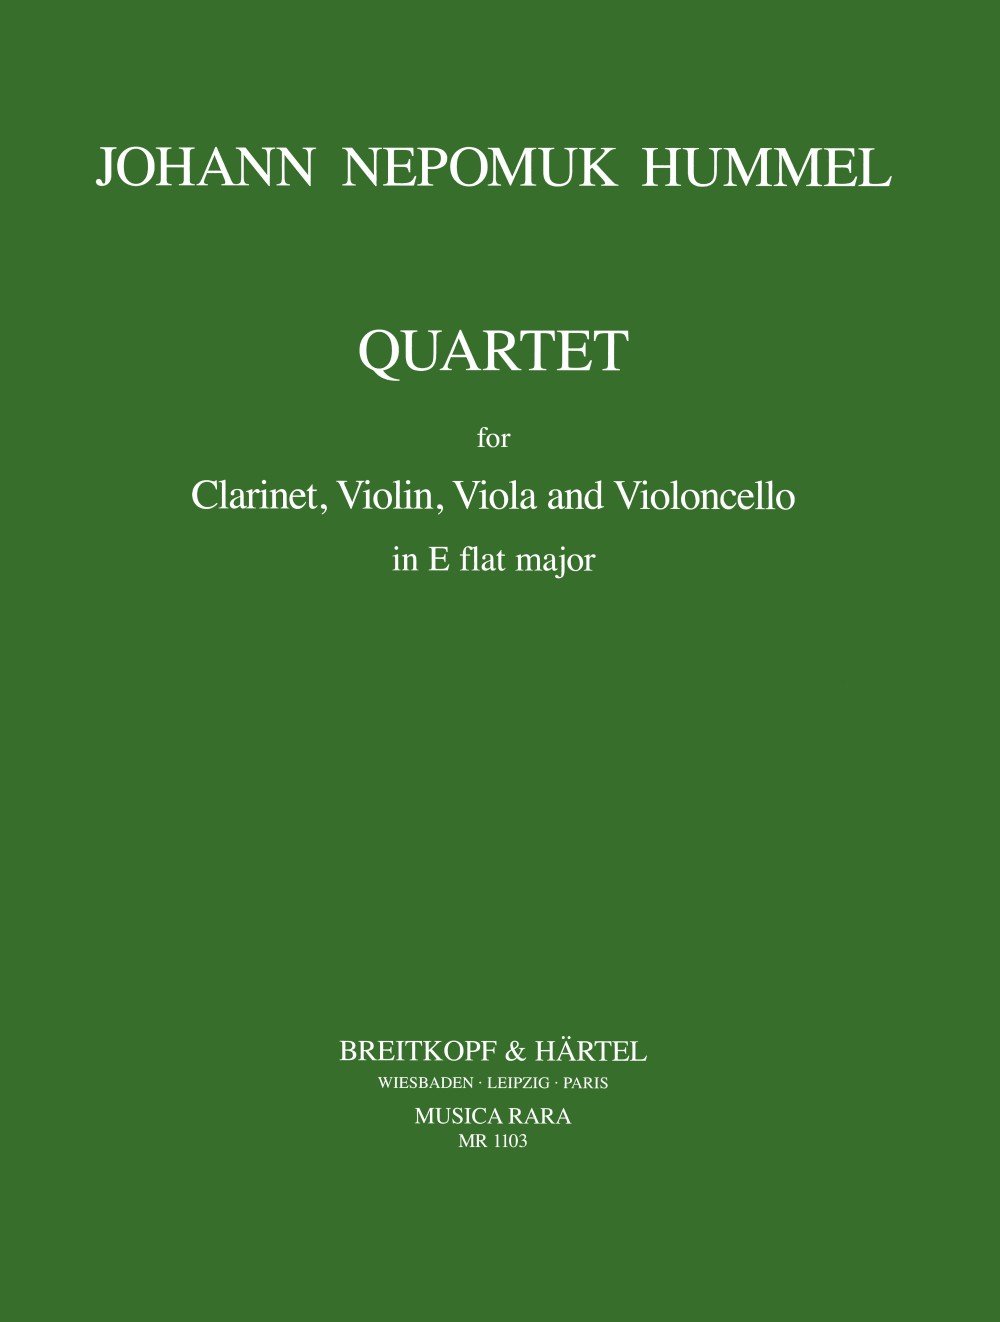 Klarinettenquartett Es-dur für Klarinette, Violine, Viola, Cello - Partitur und Stimmen (MR 1103)